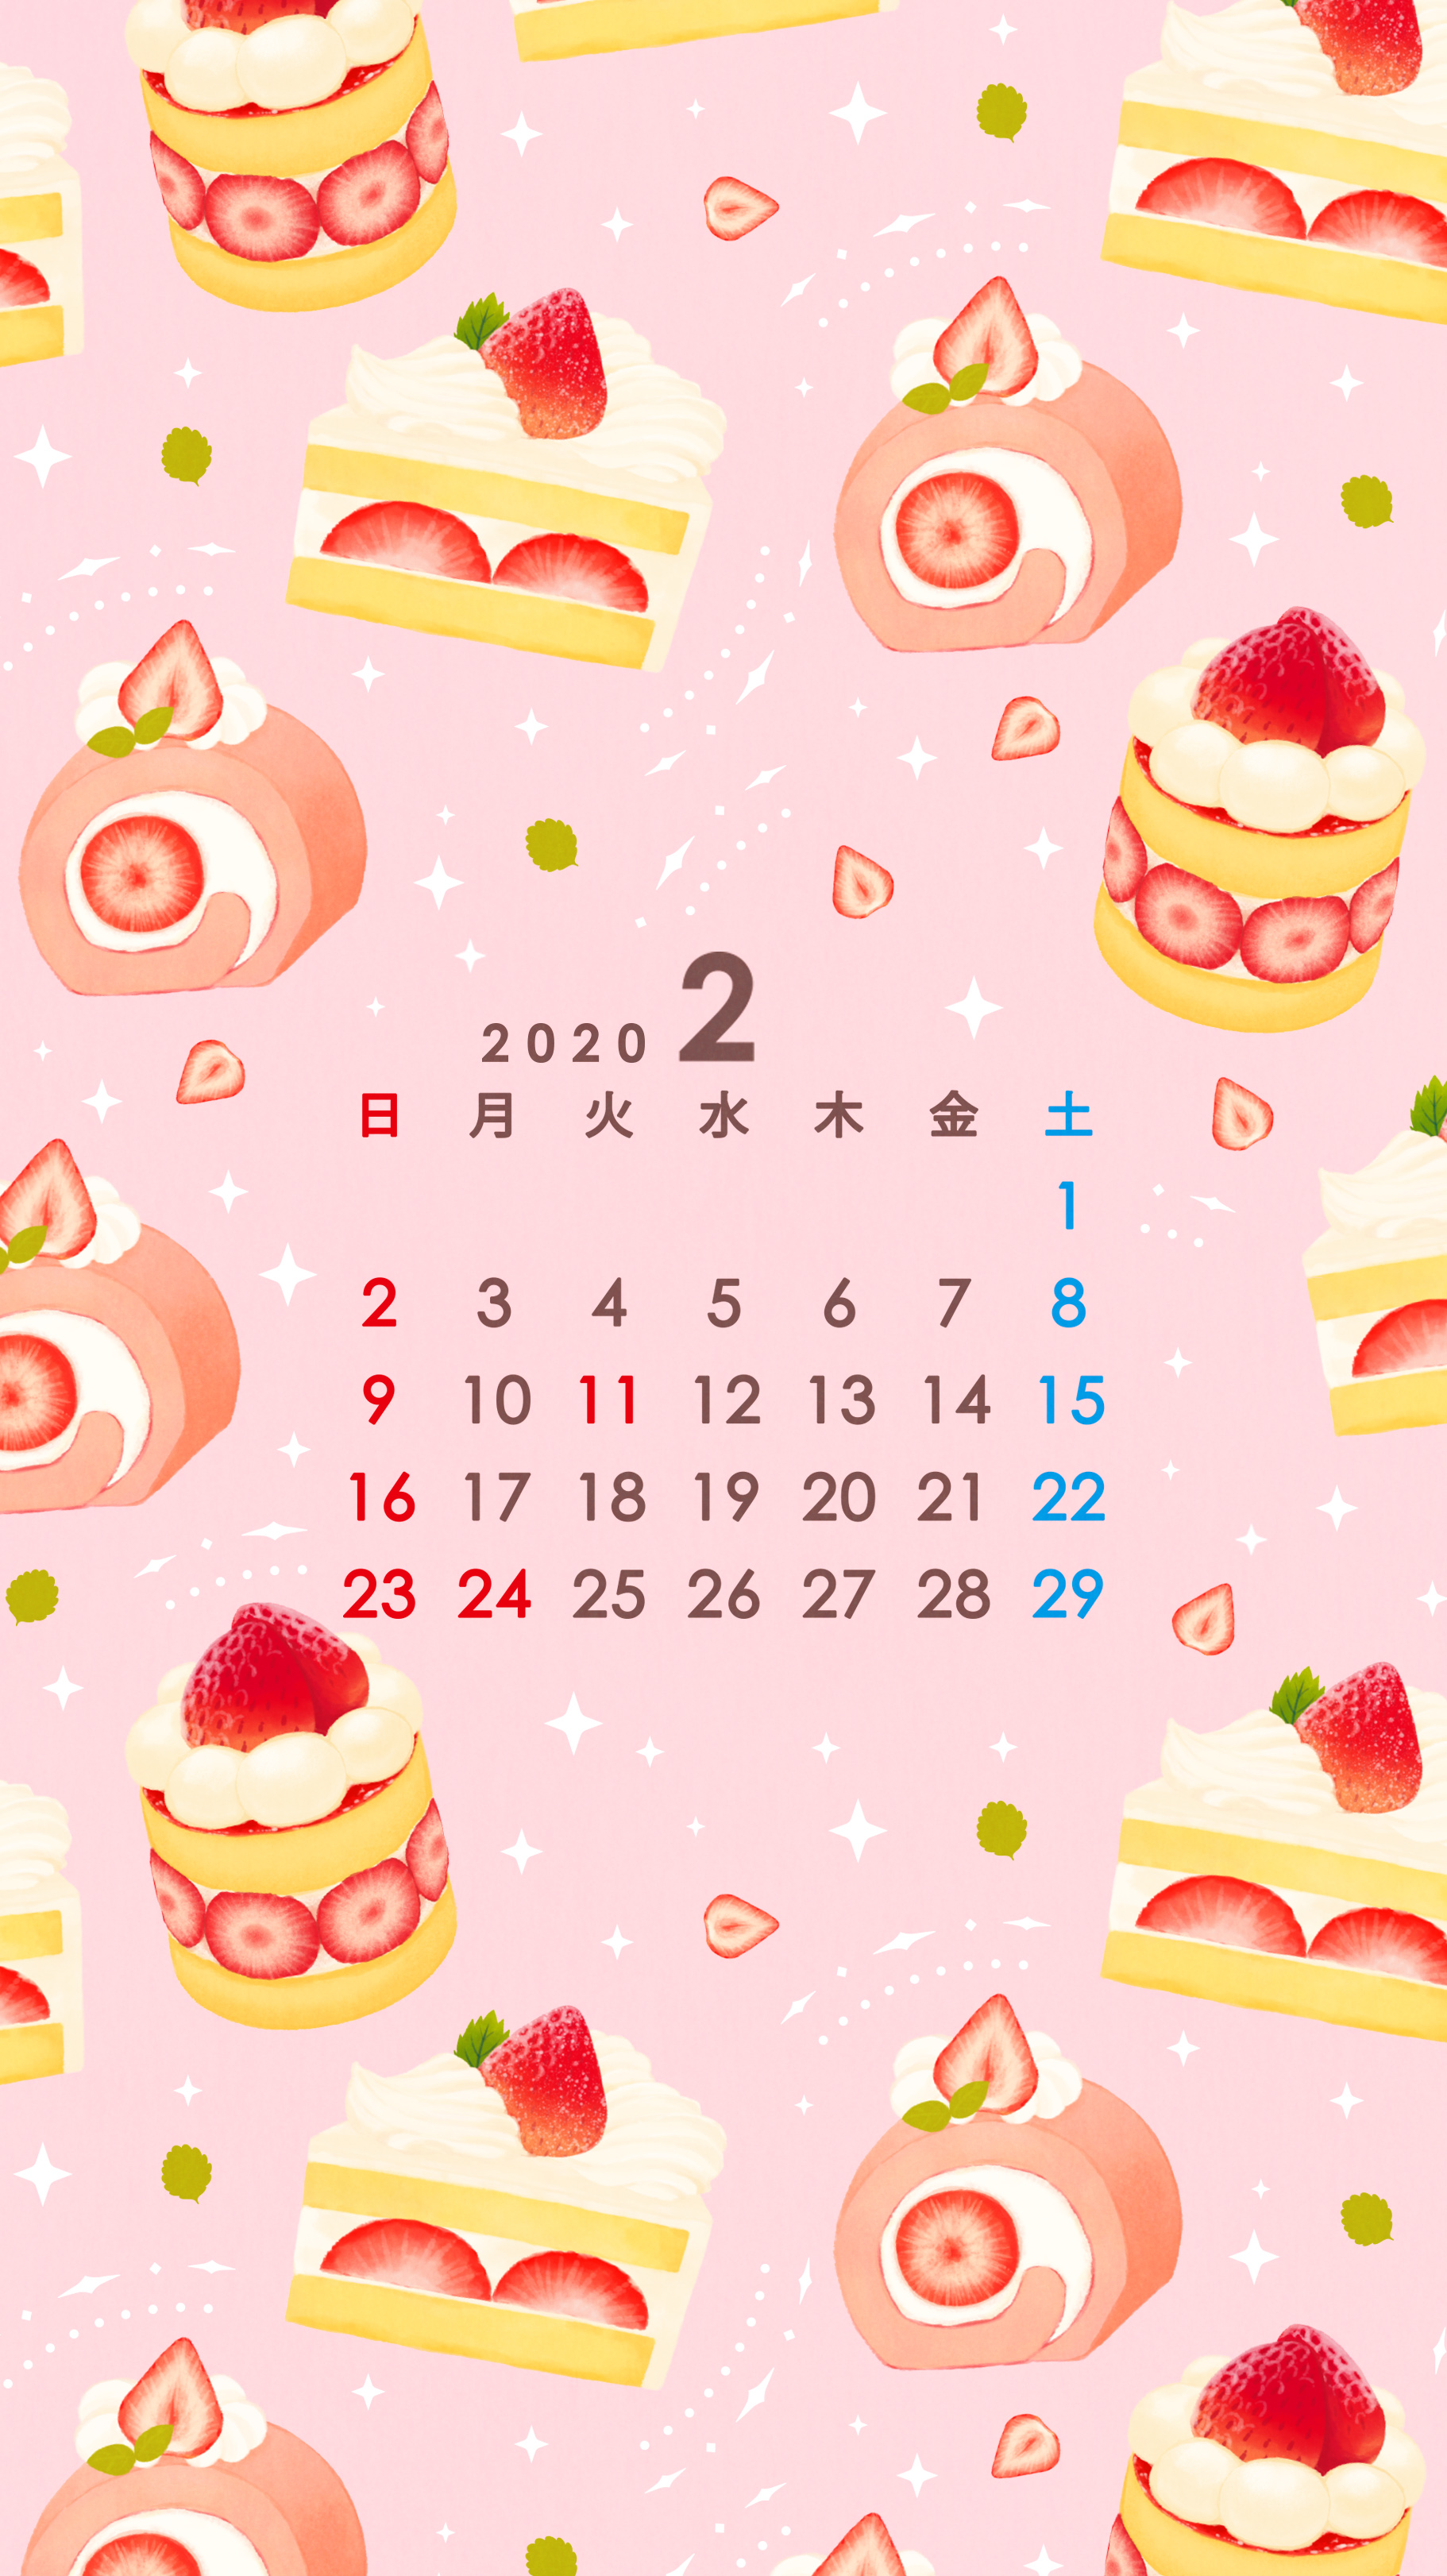 Omiyu お返事遅くなります いちごスイーツな壁紙カレンダー 2月 Illust Illustration 壁紙 イラスト Iphone壁紙 ケーキ Cake カレンダー T Co Qiofujm2ic Twitter